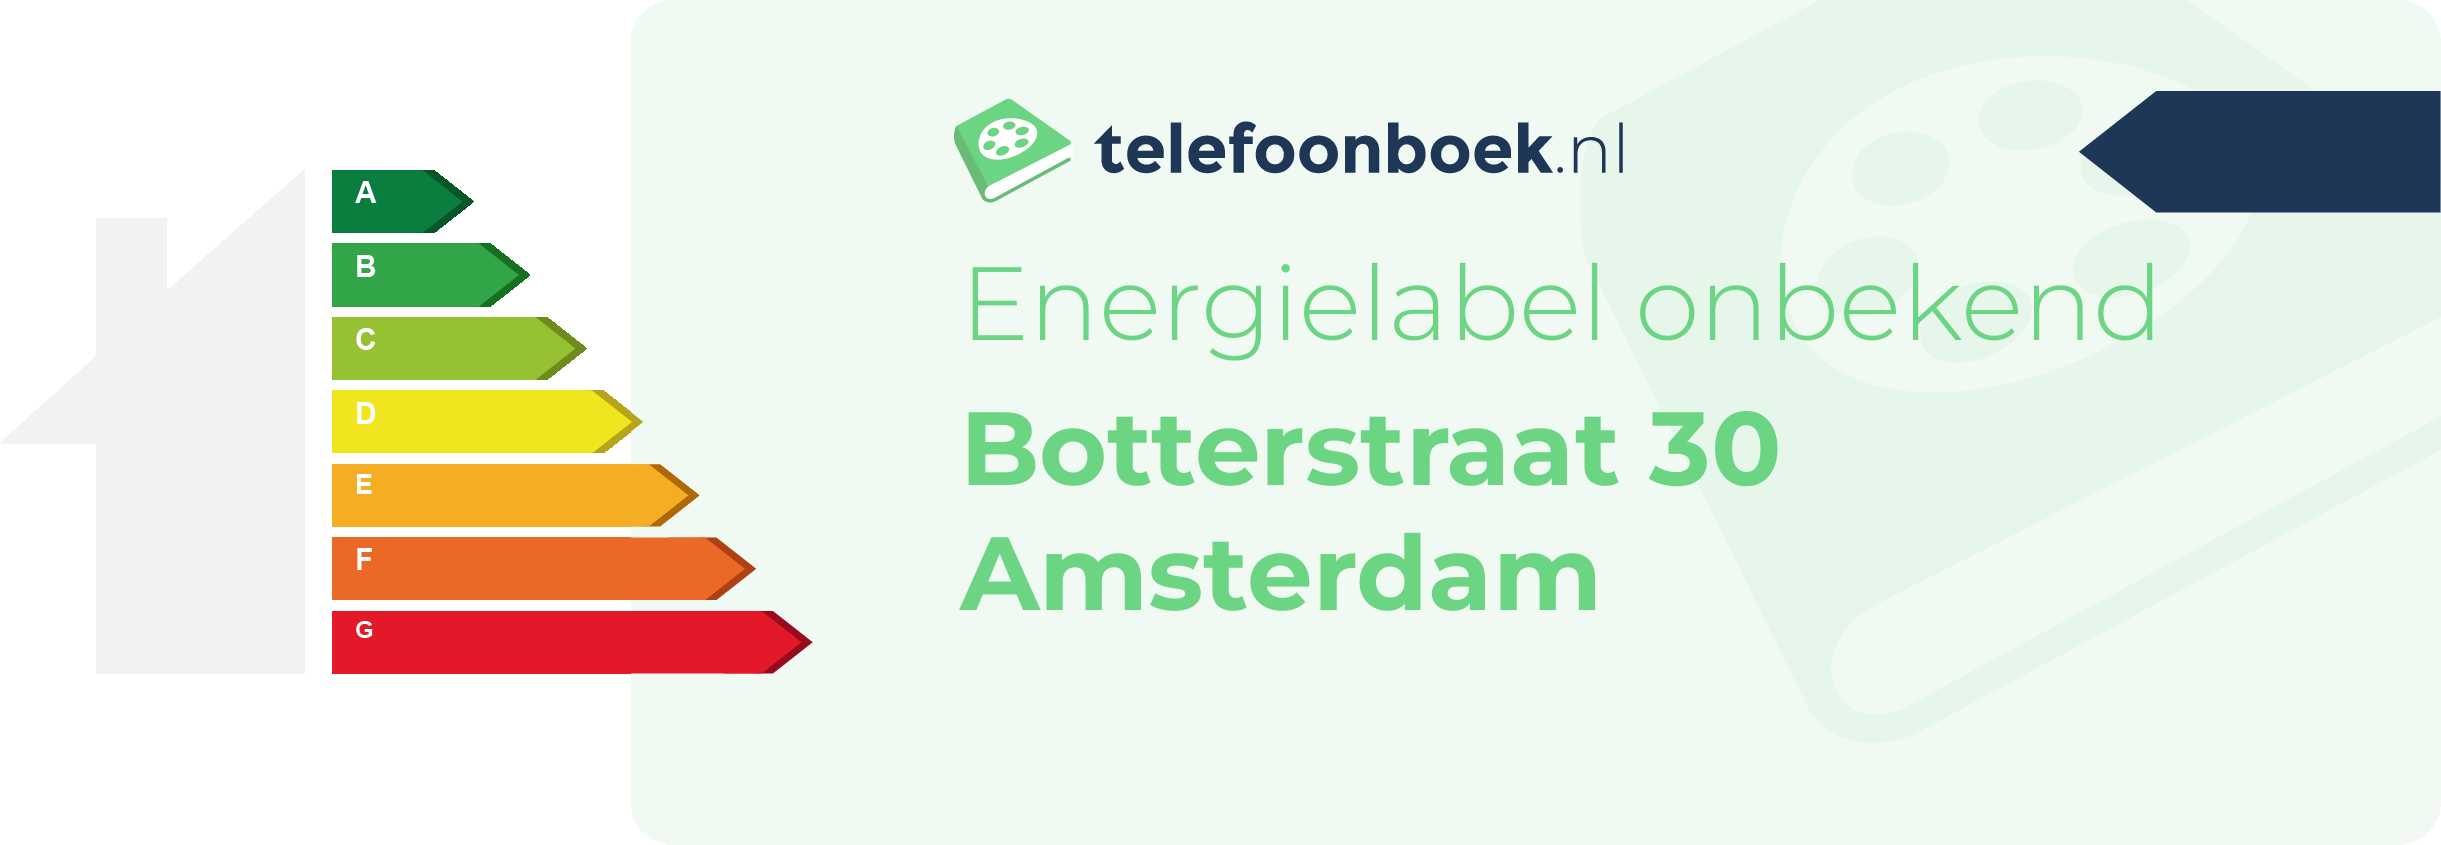 Energielabel Botterstraat 30 Amsterdam